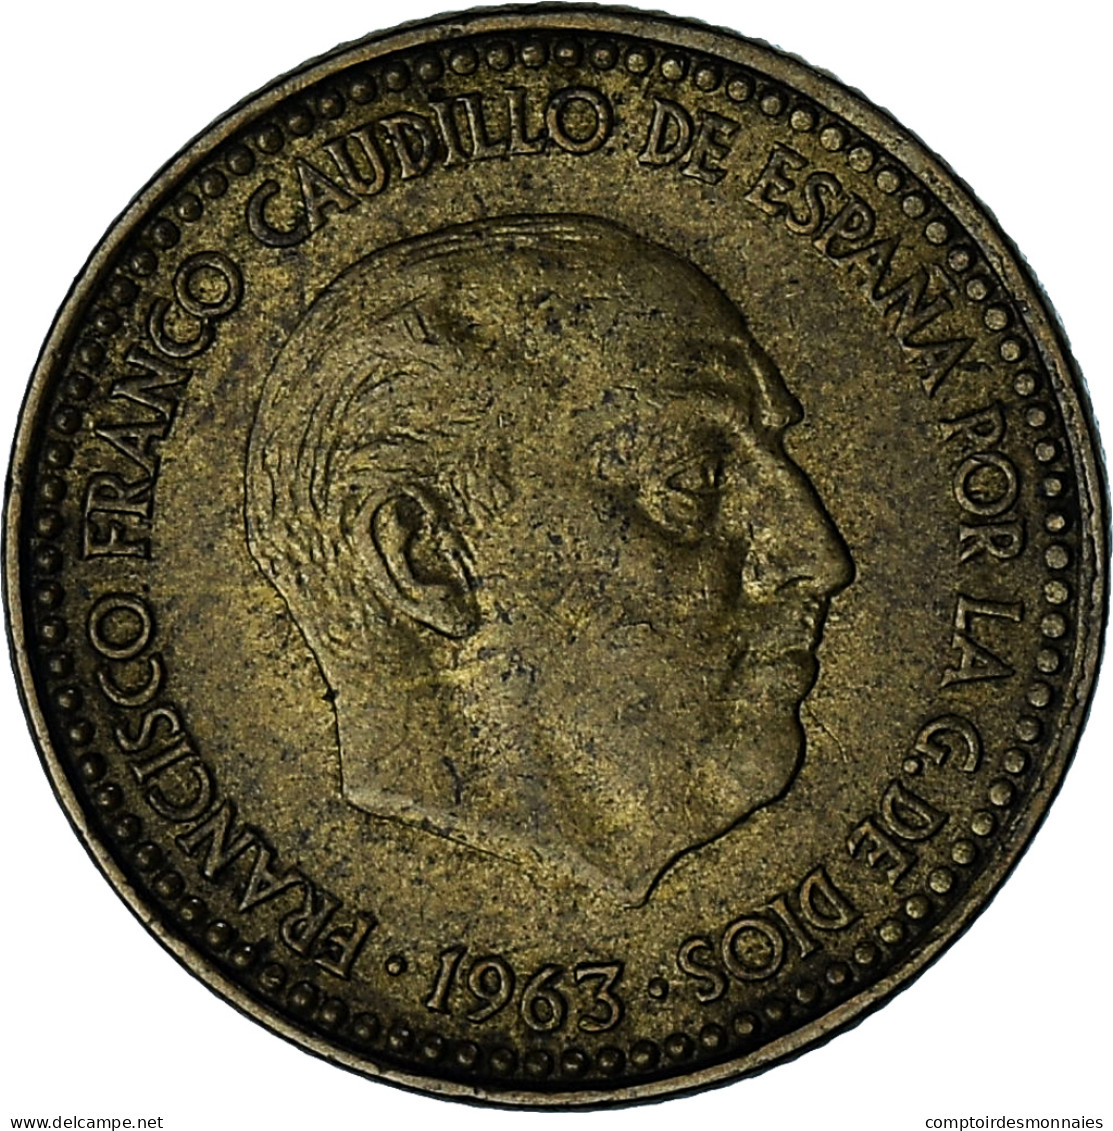 Espagne, Francisco Franco, Caudillo, Peseta, 1963 (65), Bronze-Aluminium, TTB - 1 Peseta